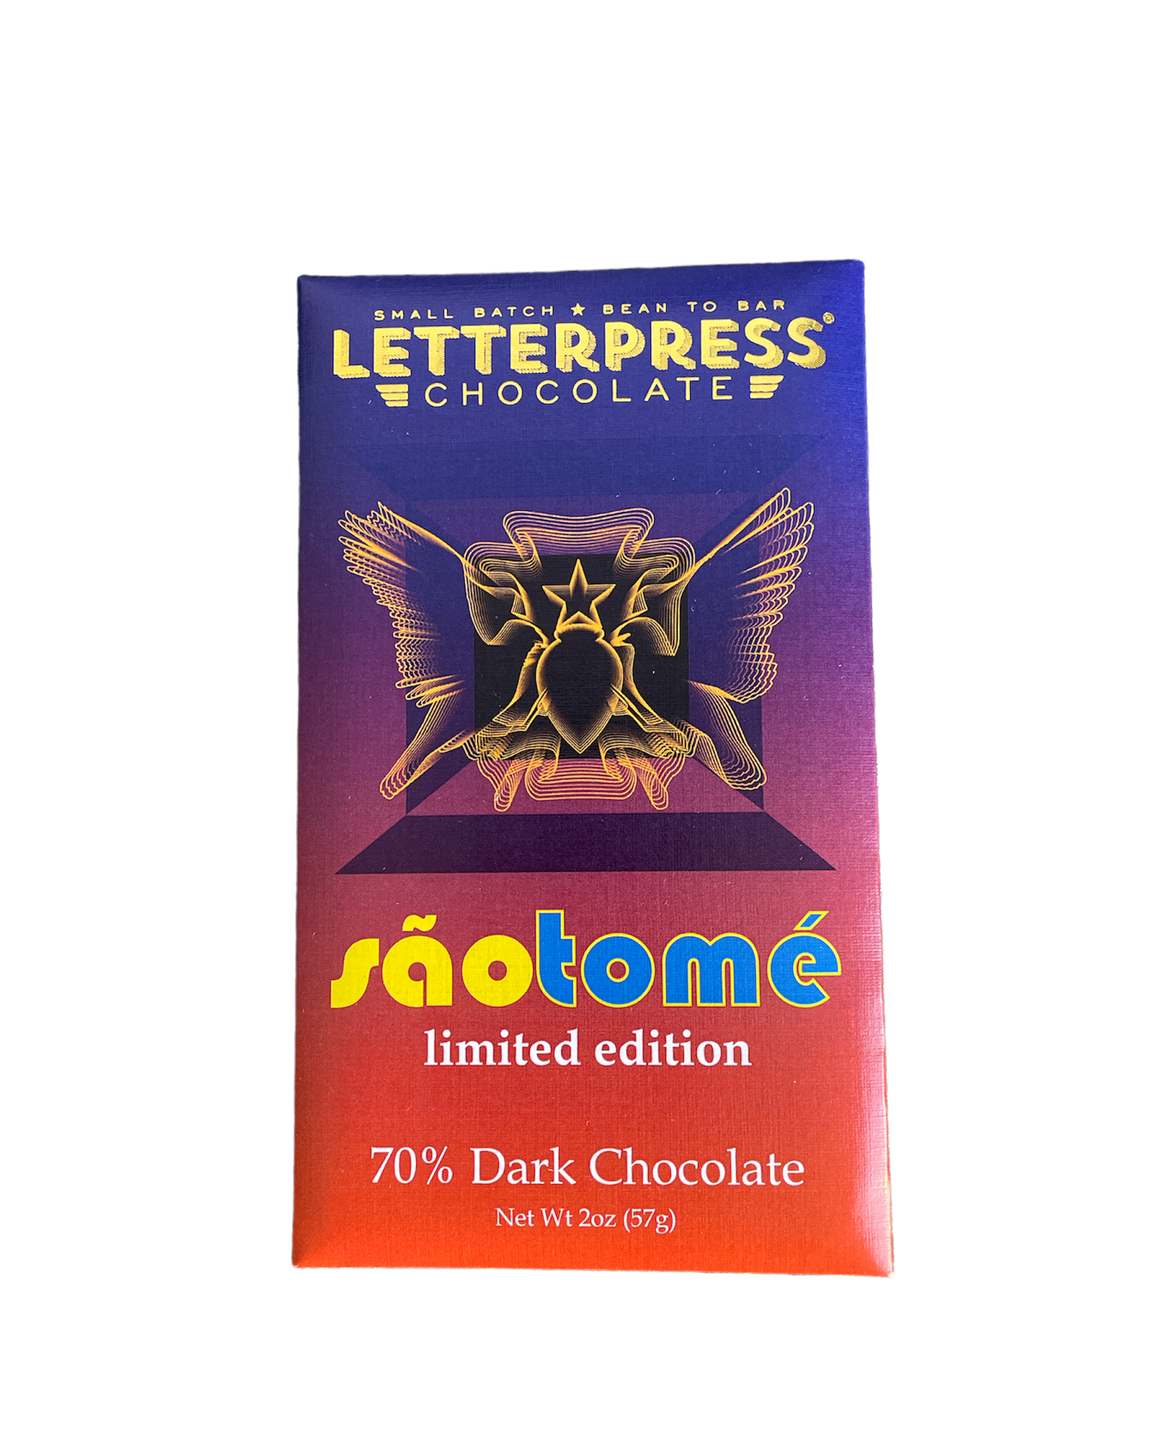 Dark Chocolate Letterpress Sao Tome